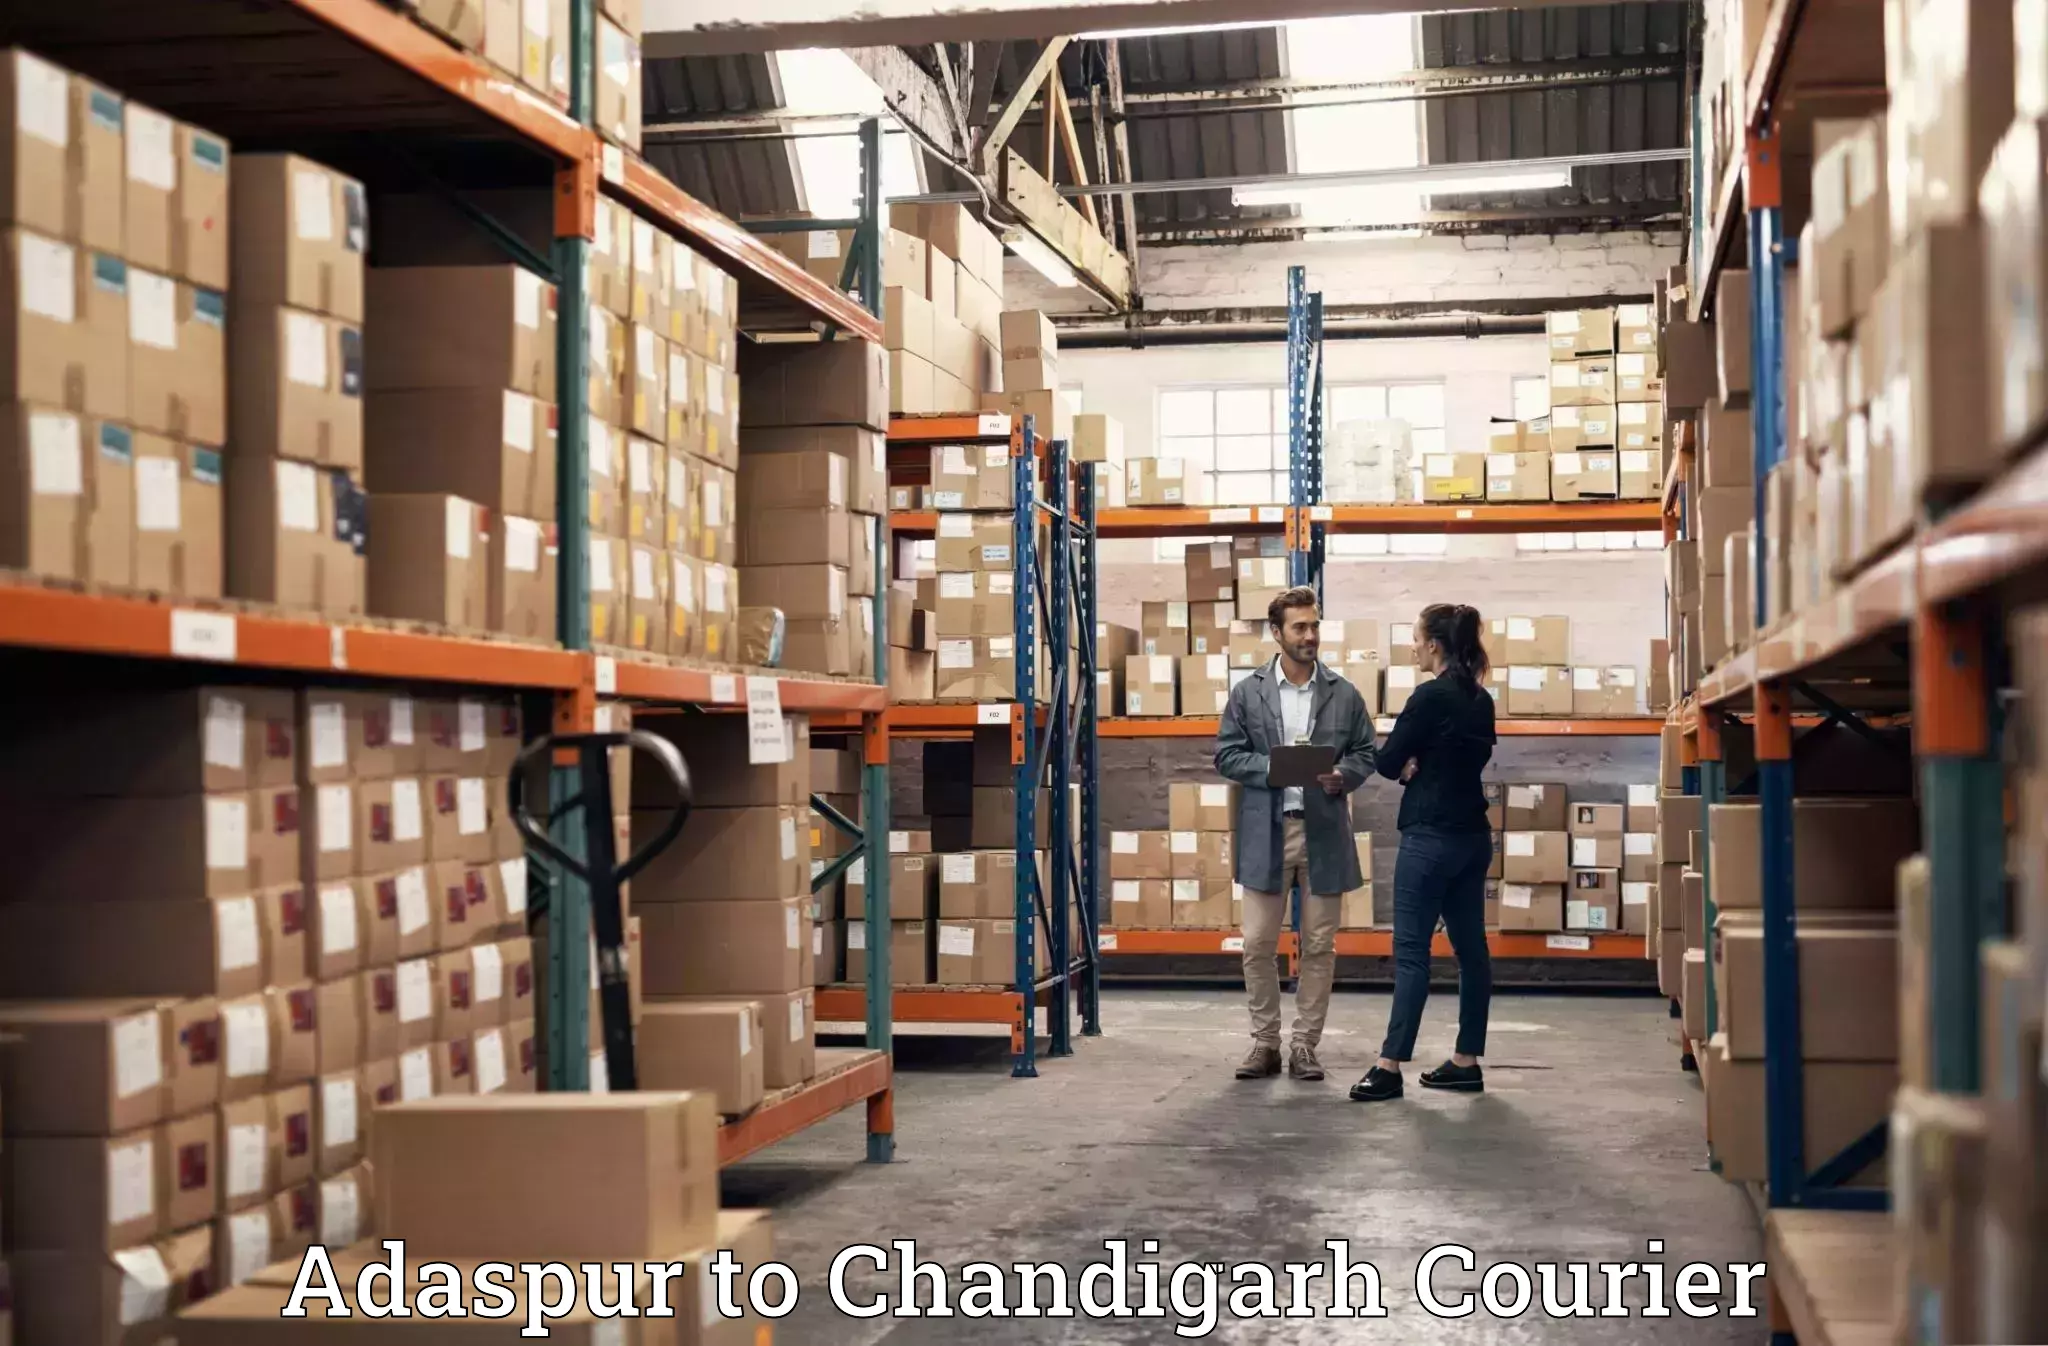 Furniture transport service Adaspur to Chandigarh